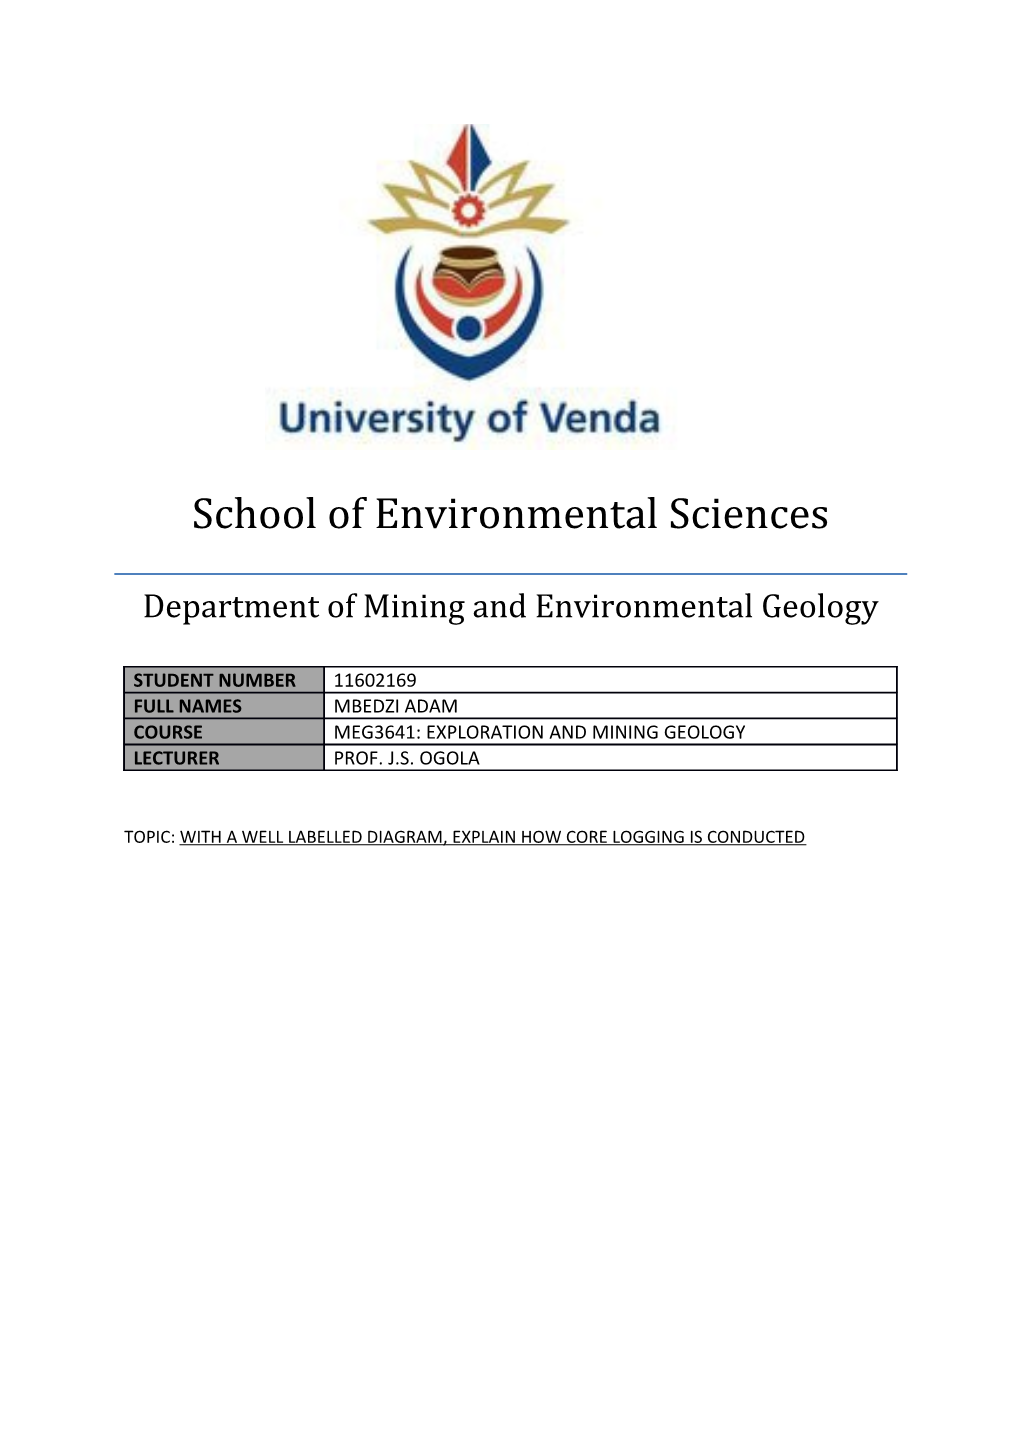 School of Environmental Sciences